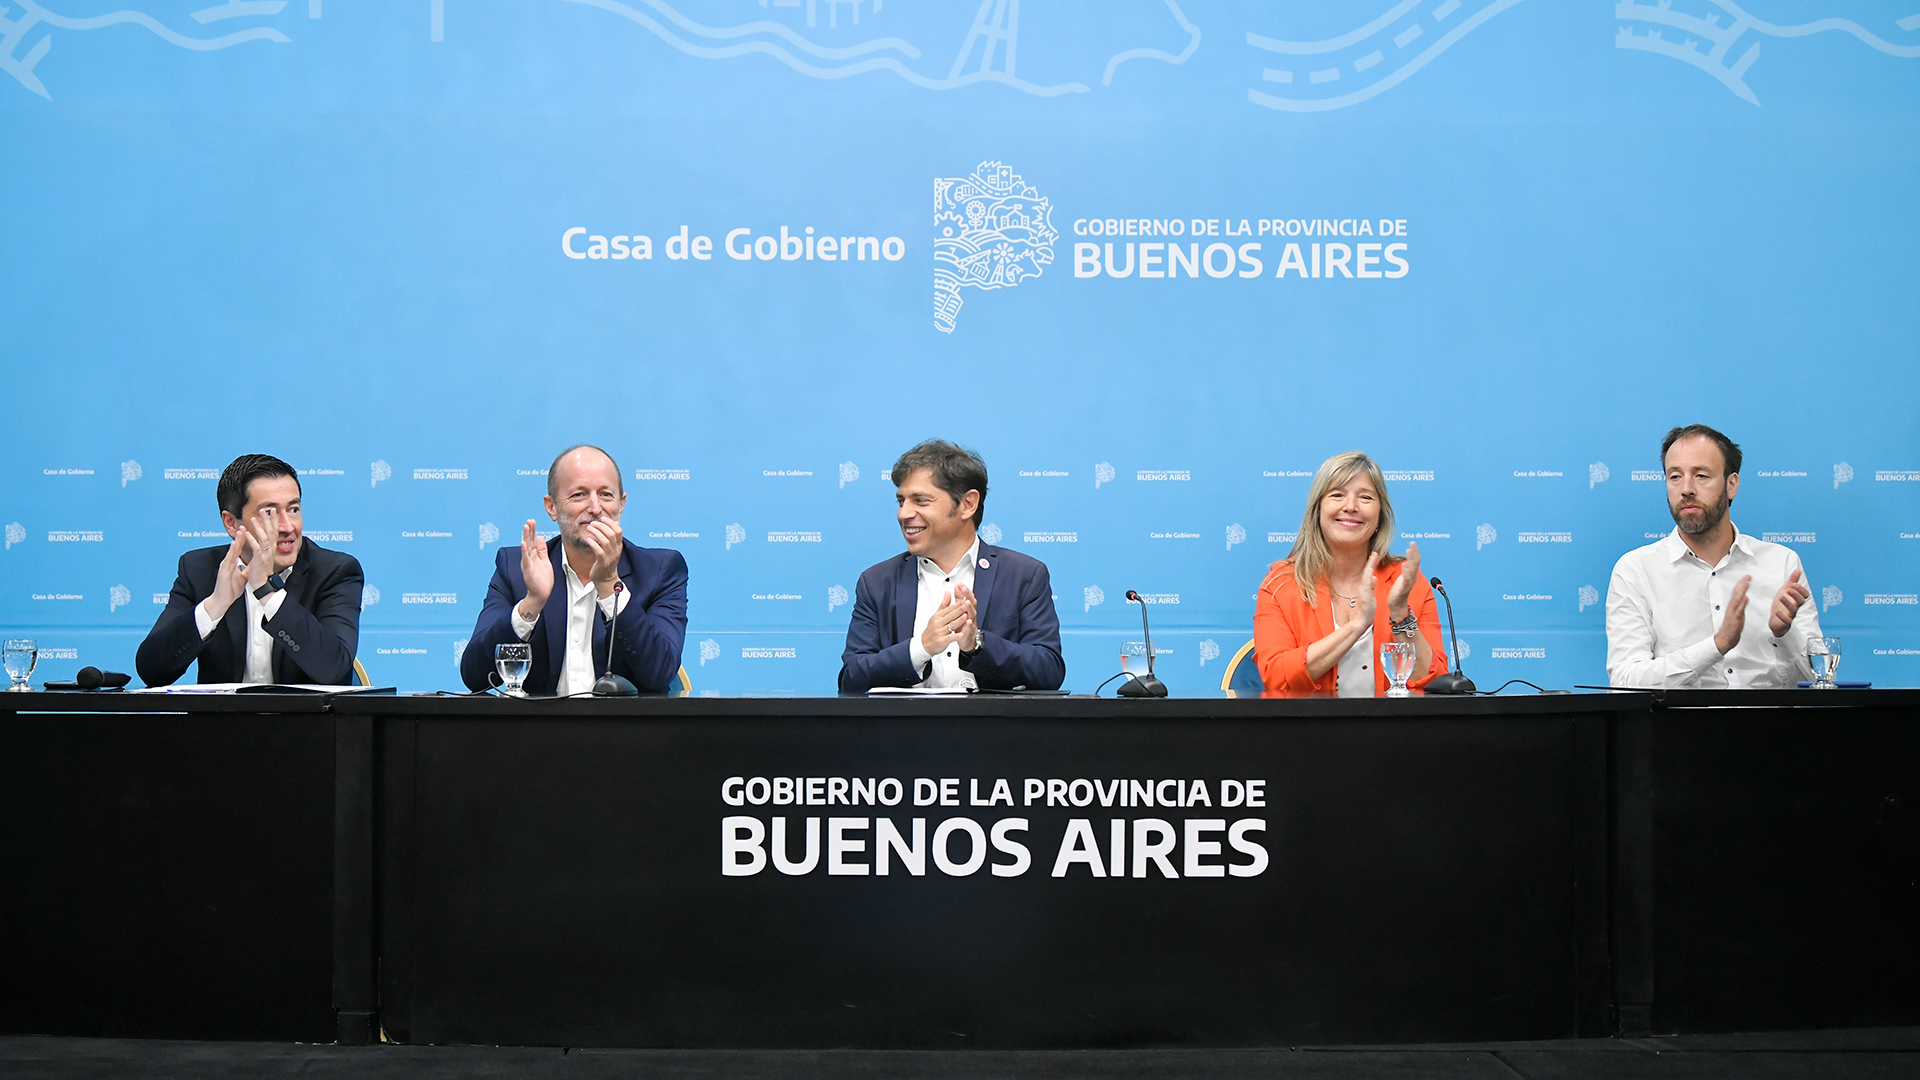 El gobernador estuvo acompañado por el jefe de Gabinete, Martín Insaurralde; los ministros de Gobierno, Cristina Álvarez Rodríguez; de Hacienda, Pablo López, y de Infraestructura, Leonardo Nardini